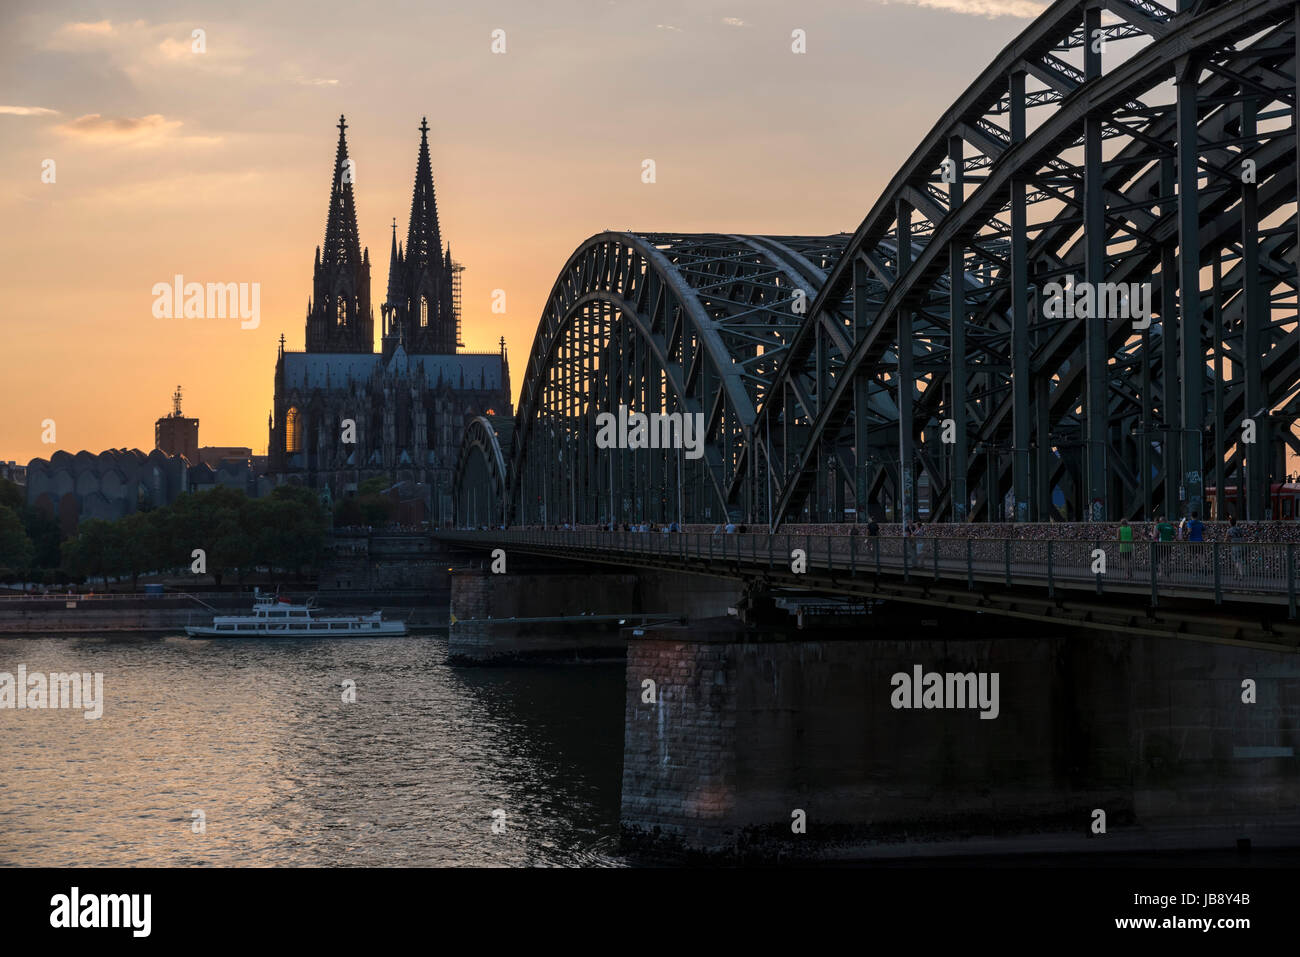 Río Rin al atardecer, mirando hacia la catedral de Colonia (Kölner Dom) con el puente Hohenzollern Hohenzollernbrücke) en primer plano, Colonia, Alemania Foto de stock